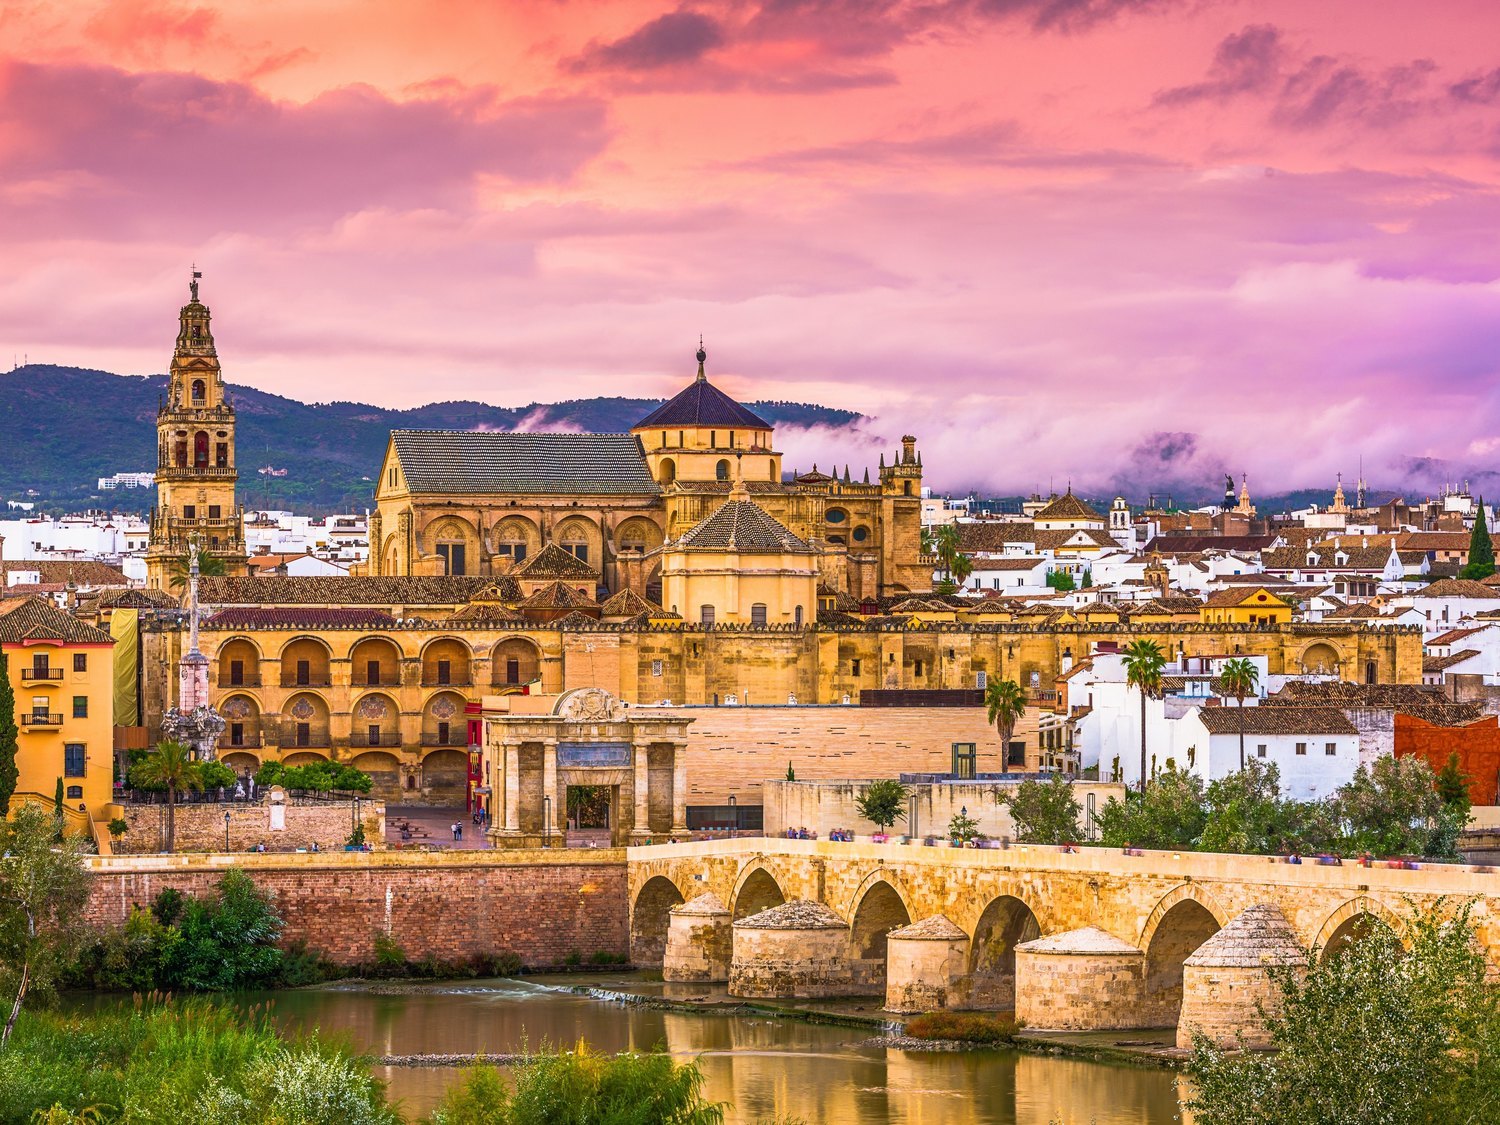 La ciudad Patrimonio de la Humanidad más bonita de España, según Lonely Planet